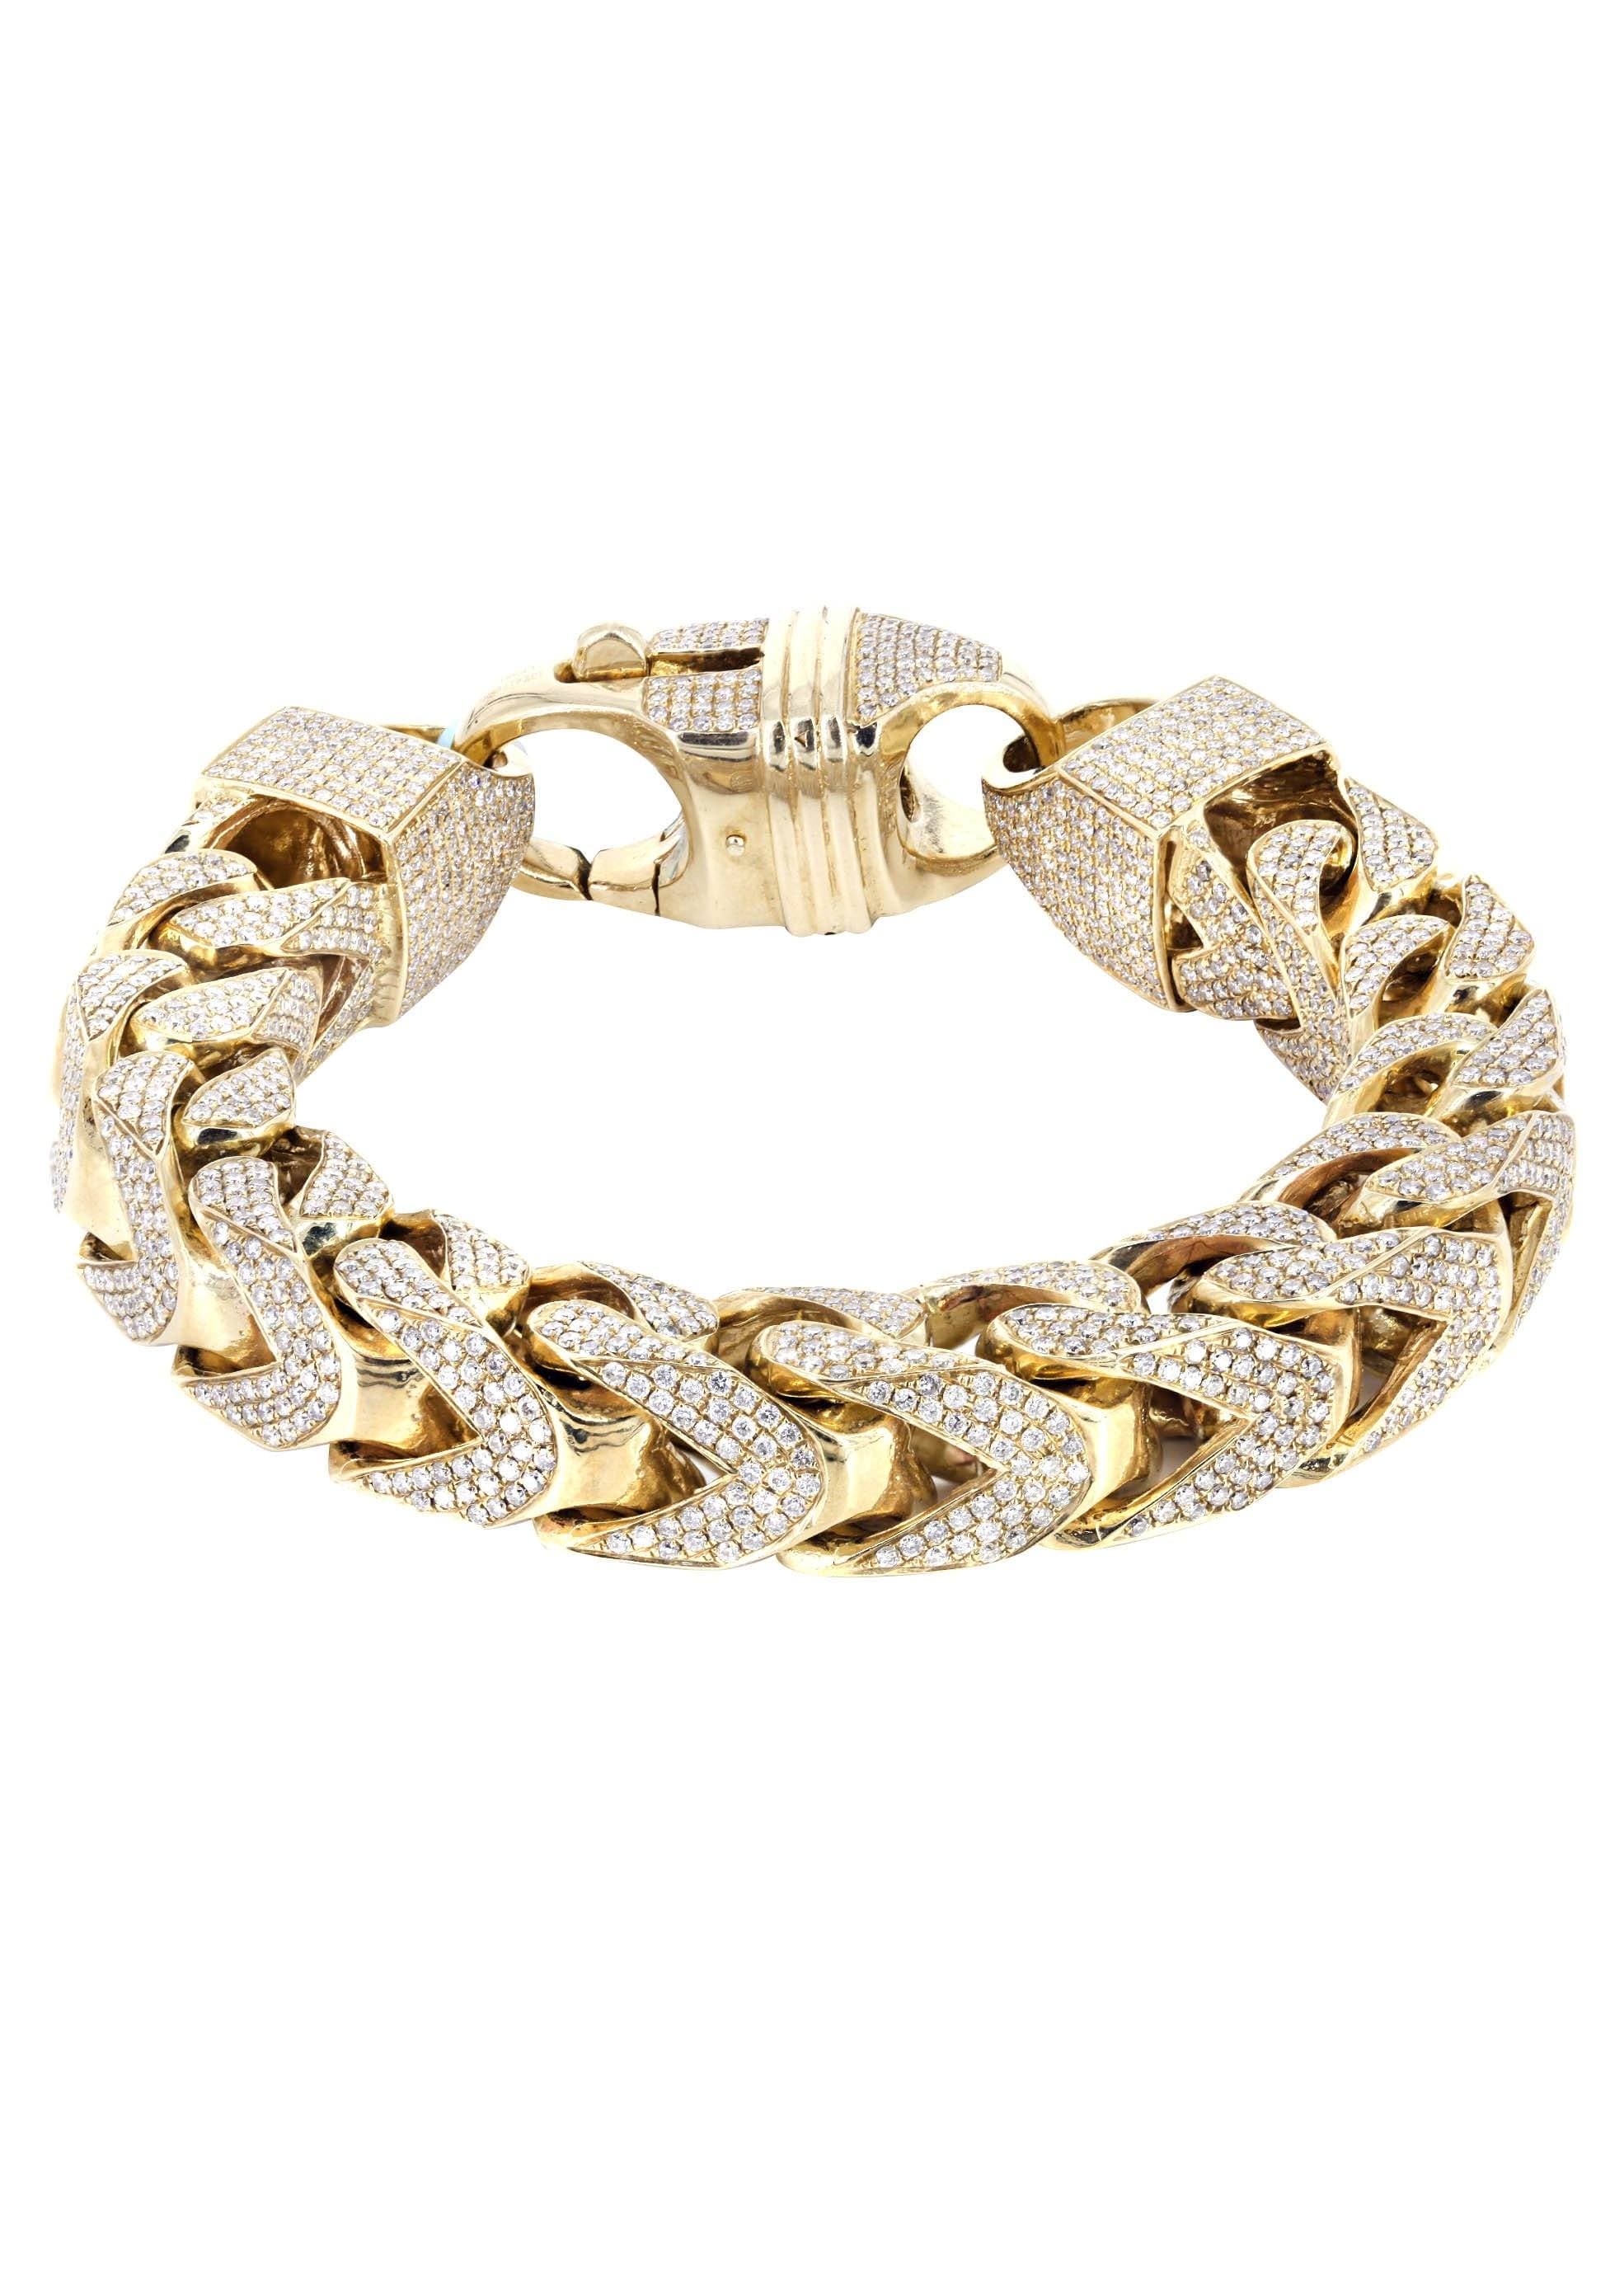 10K Diamond Franco Bracelet | 28.8 Carats | 14 mm Width – FrostNYC